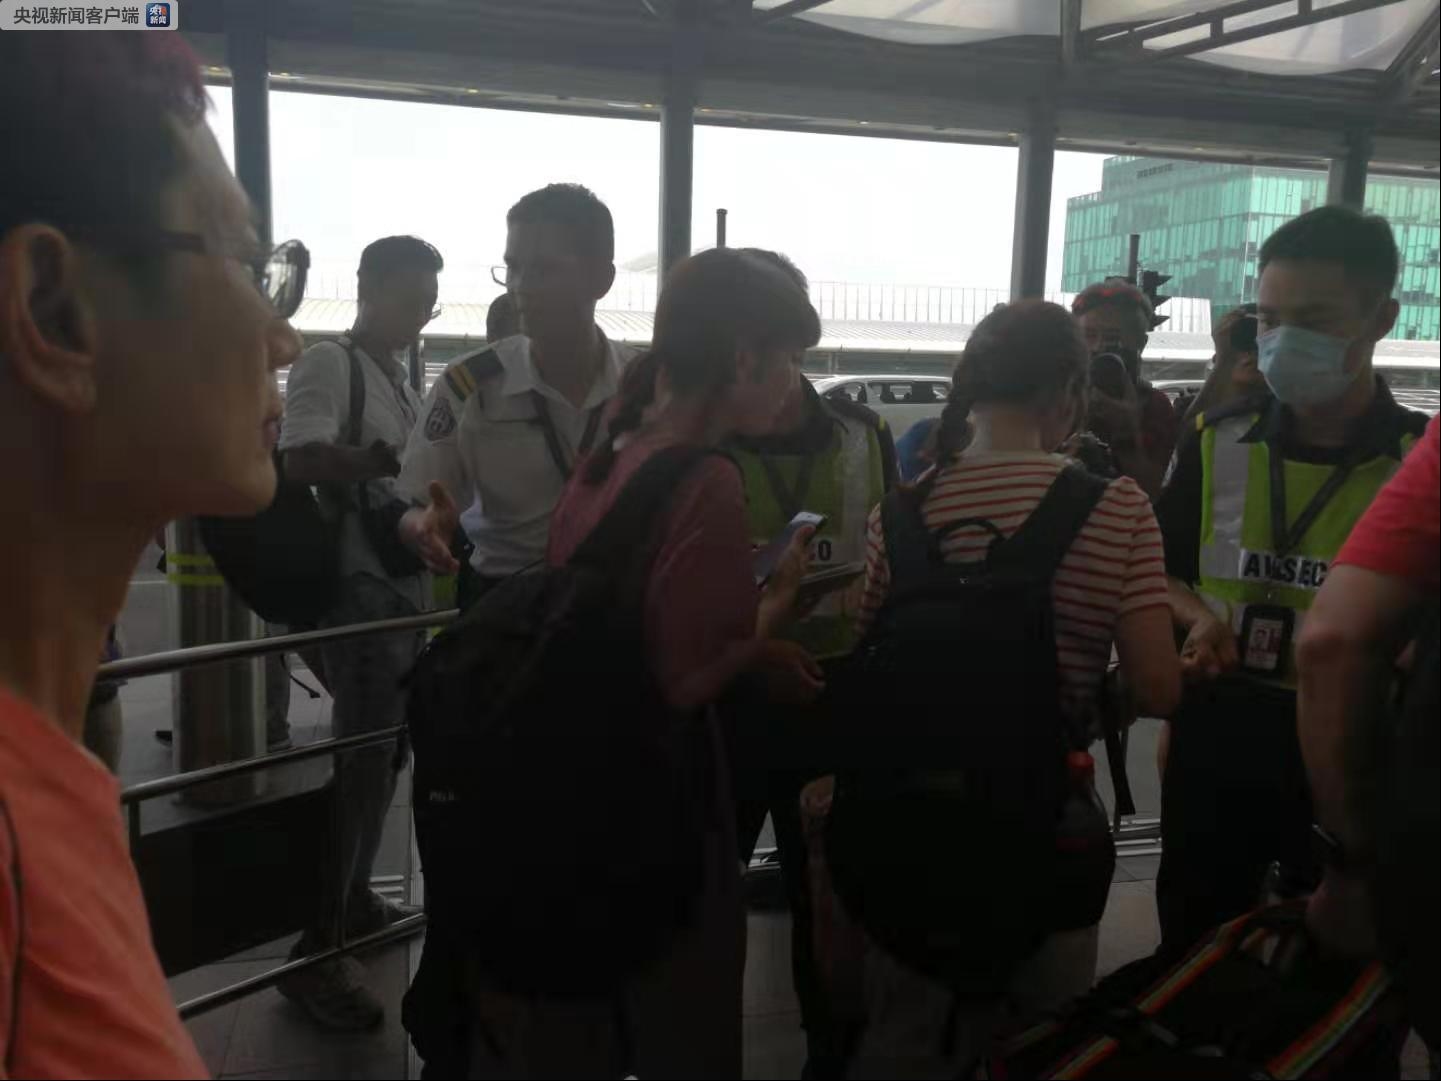 香港机管局继续实施航班重新编配 14日约130班航班取消